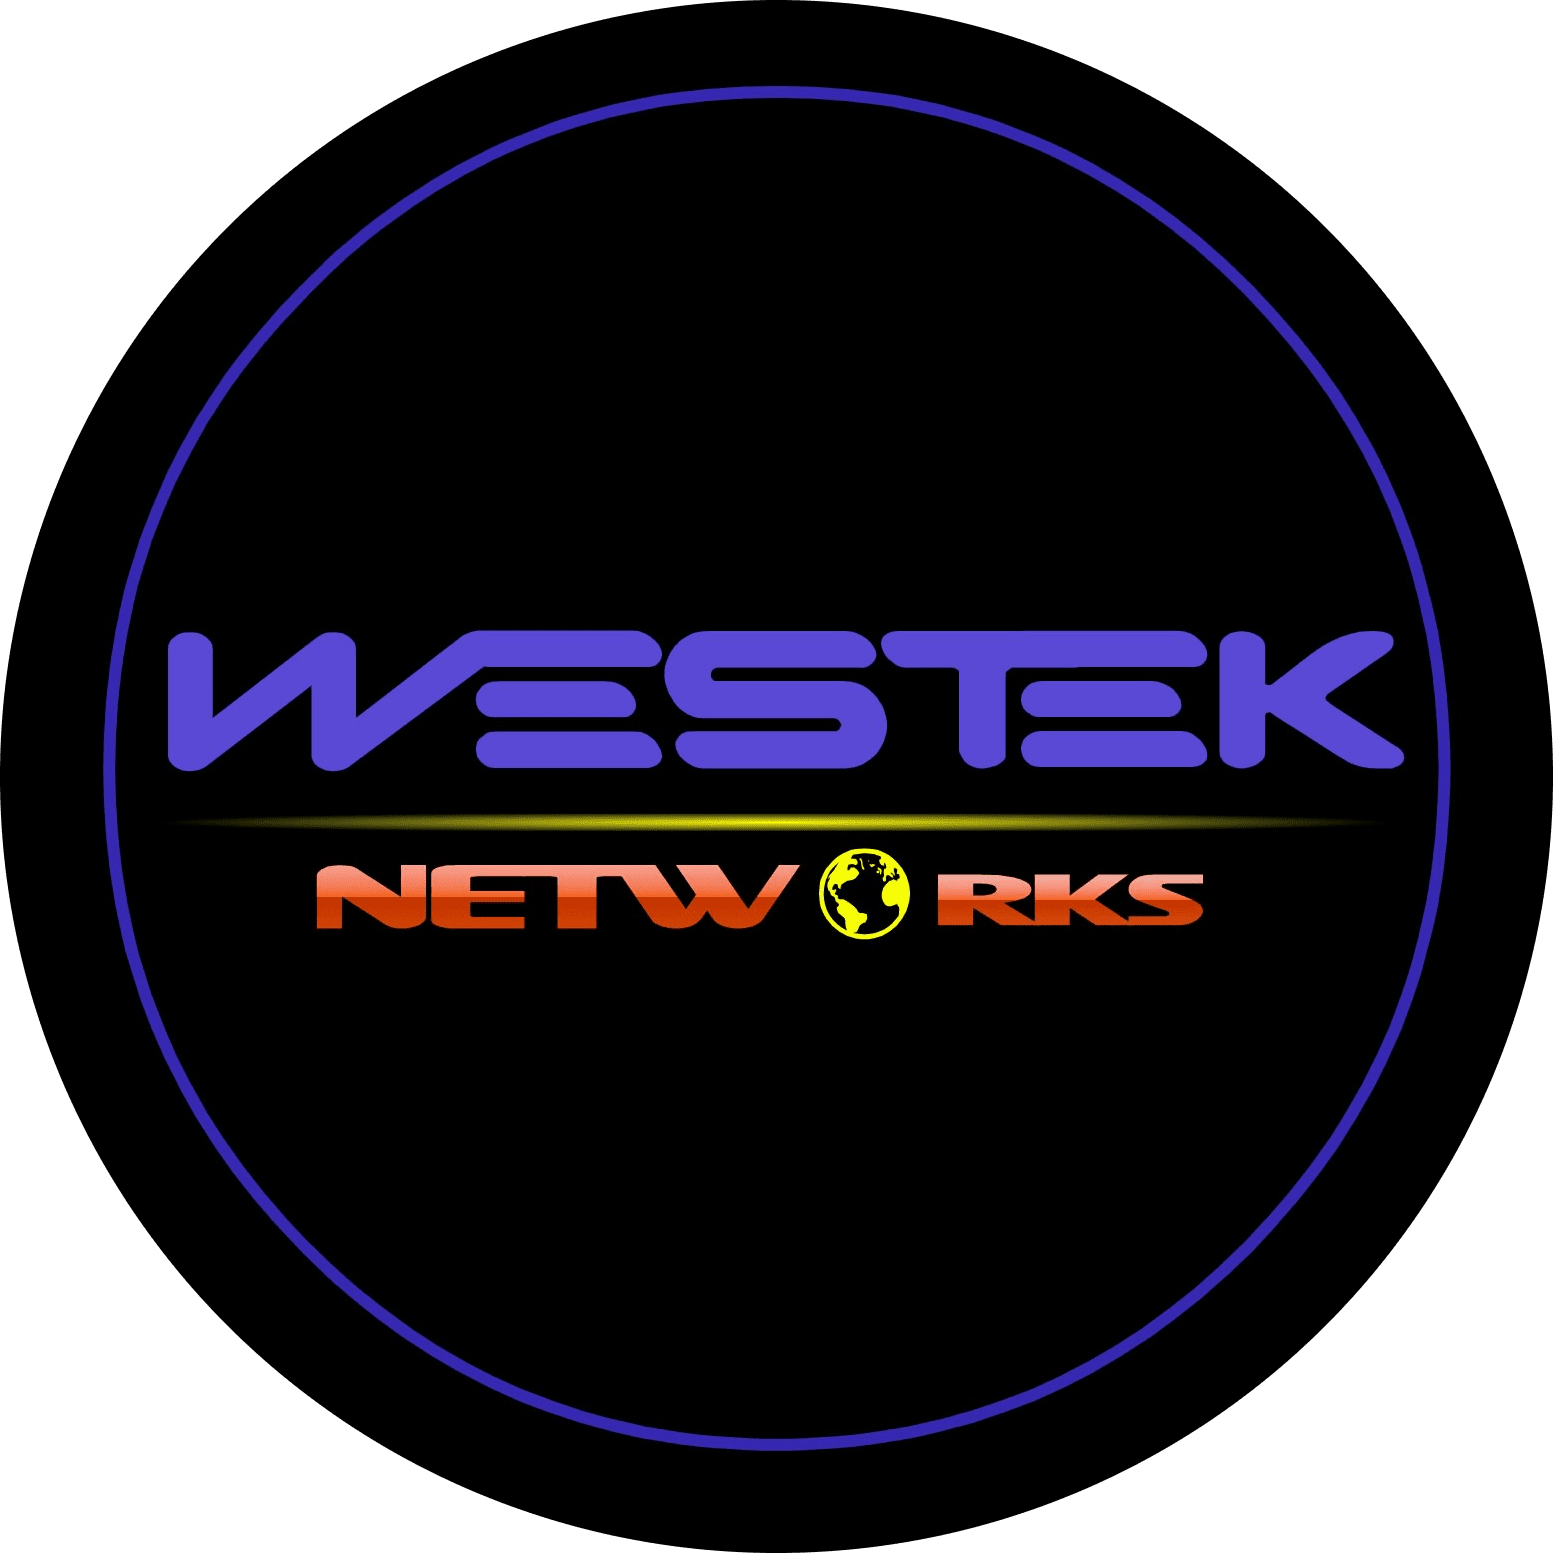 WESTEK NETWORKS INC.